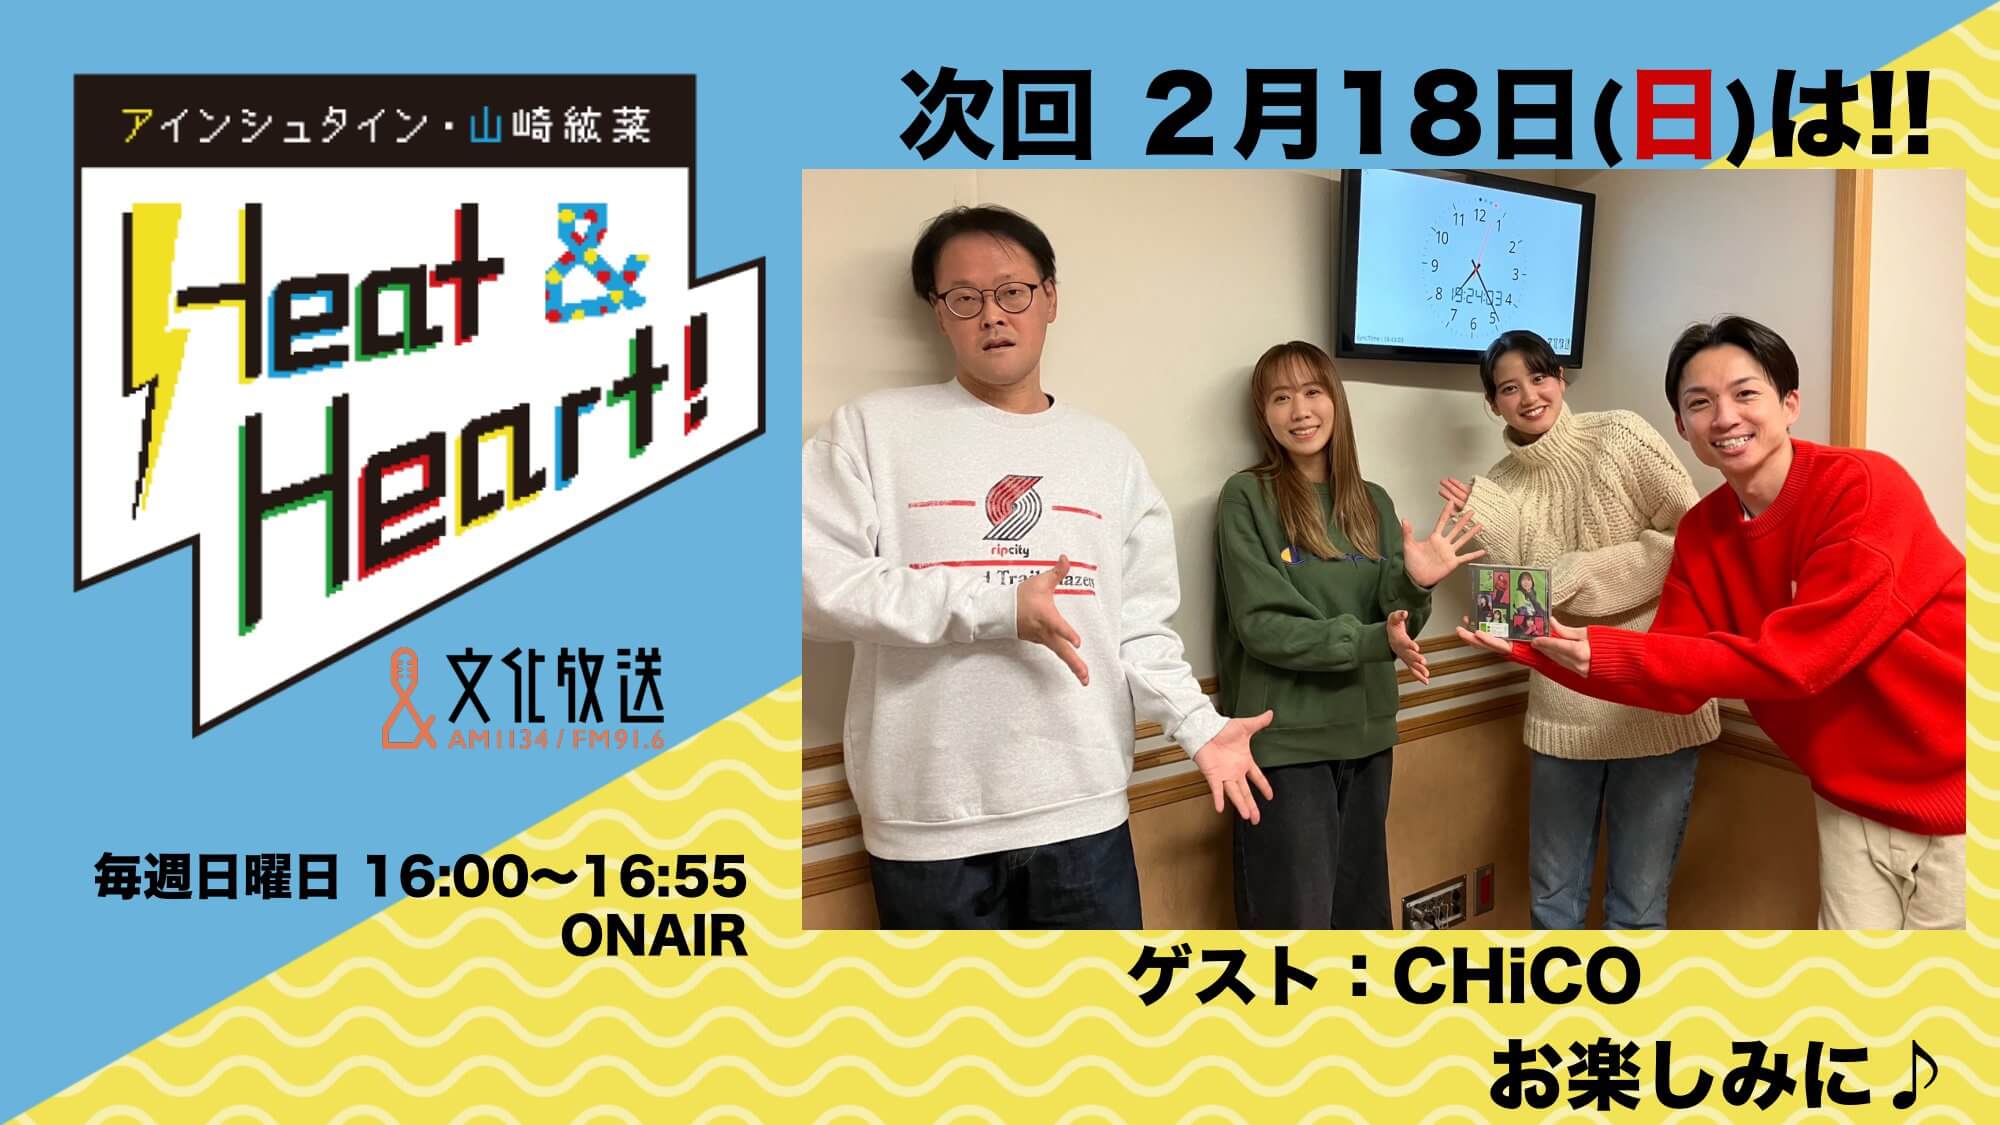 2月18日の放送はゲストにアーティスト・CHiCOさんが登場！『アインシュタイン・山崎紘菜 Heat&Heart!』